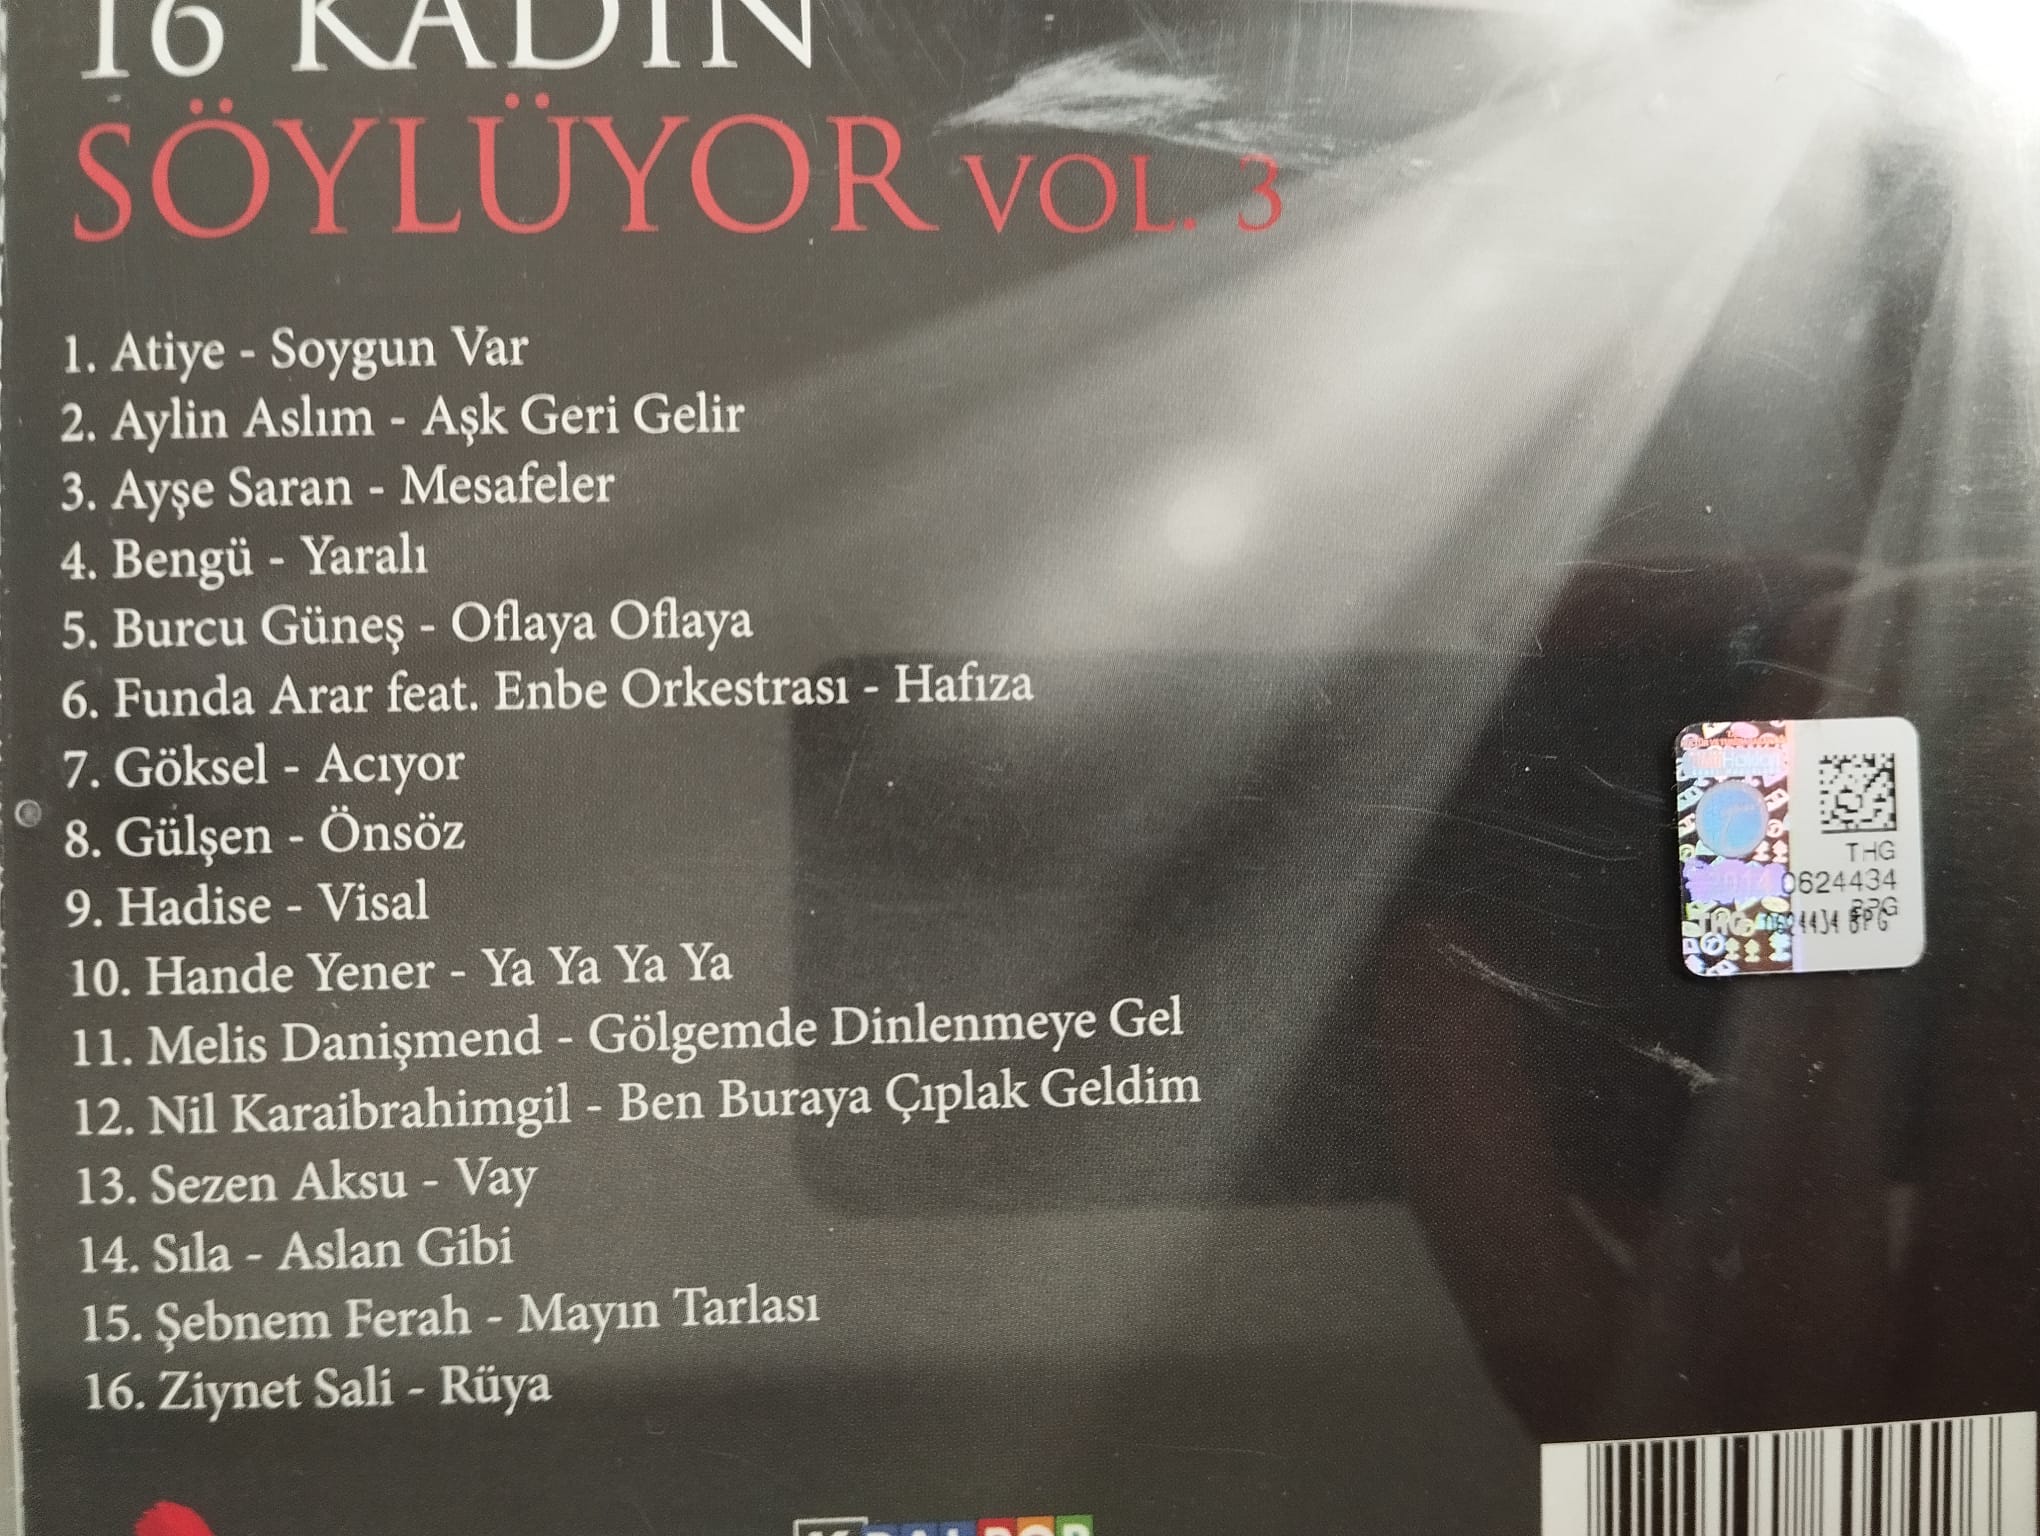 16 Kadın Söylüyor Vol. 3 - 2014 Türkiye Basım 2. El  CD Albüm